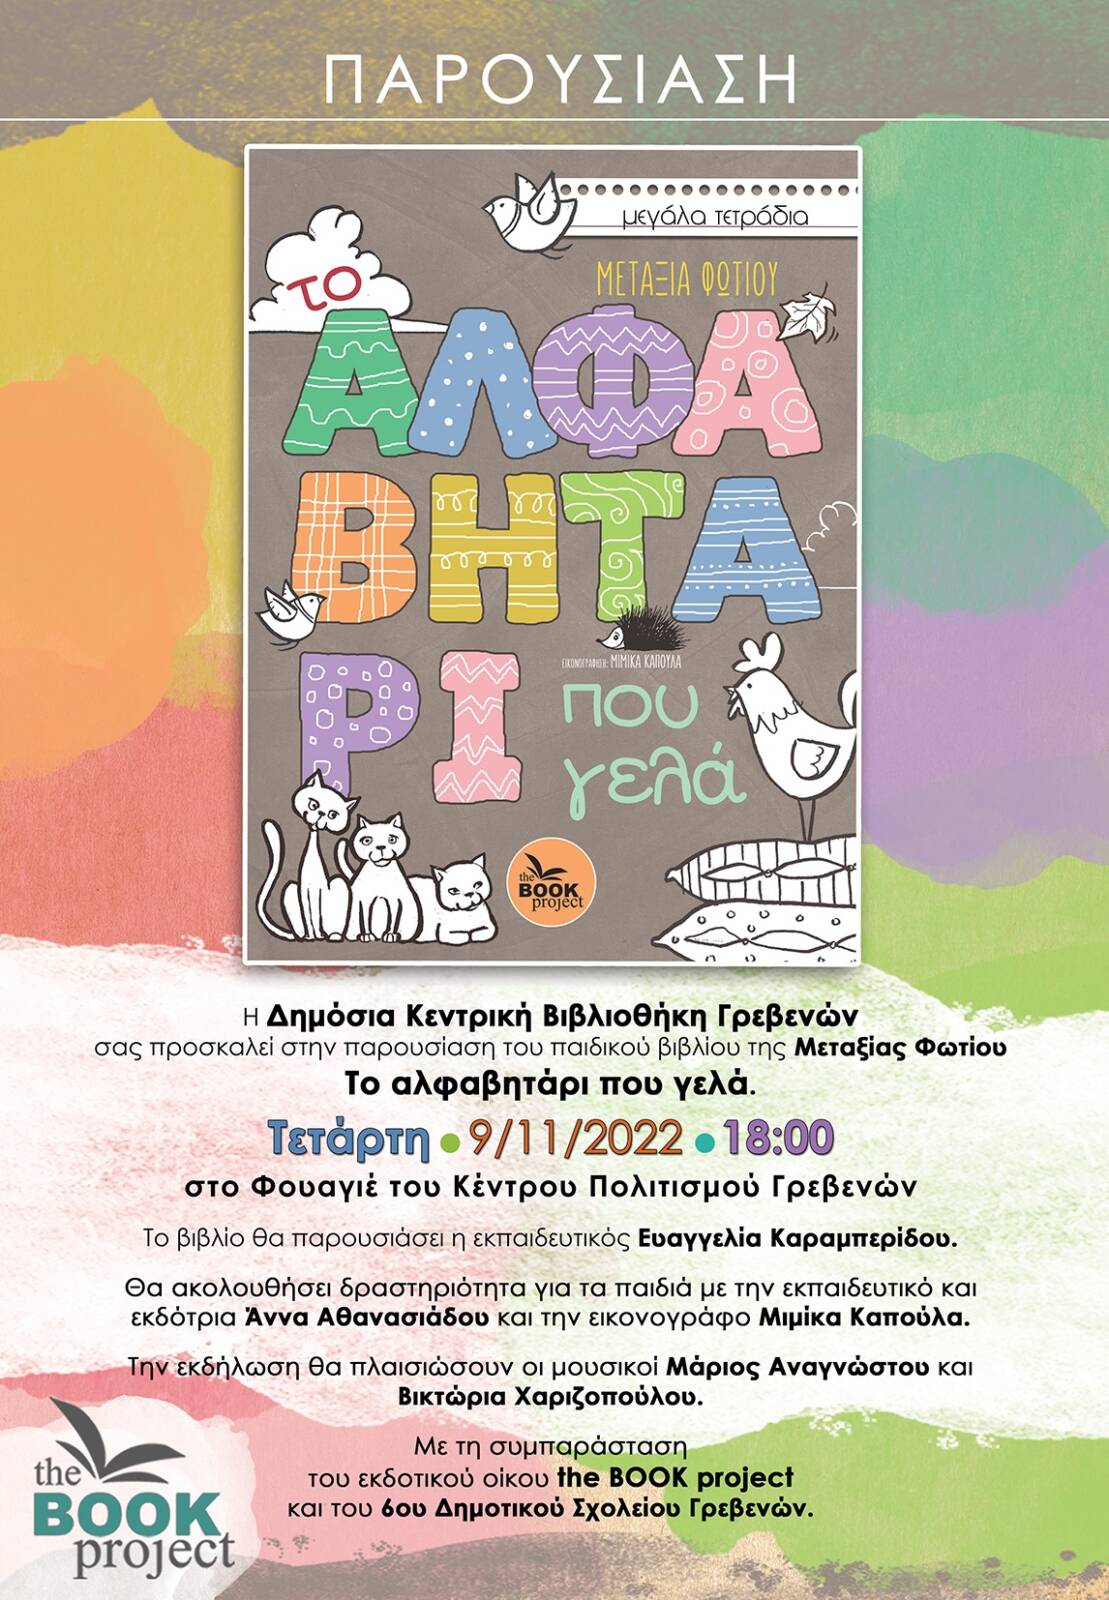 Δημόσια Κεντρική Βιβλιοθήκη Γρεβενών: Η παρουσίαση του παιδικού βιβλίου της Μεταξίας Φωτίου ”Το Αλφαβητάρι που γελά” την Τετάρτη 9 Νοεμβρίου στο Φουαγιέ του Κέντρου Πολιτισμού Γρεβενών